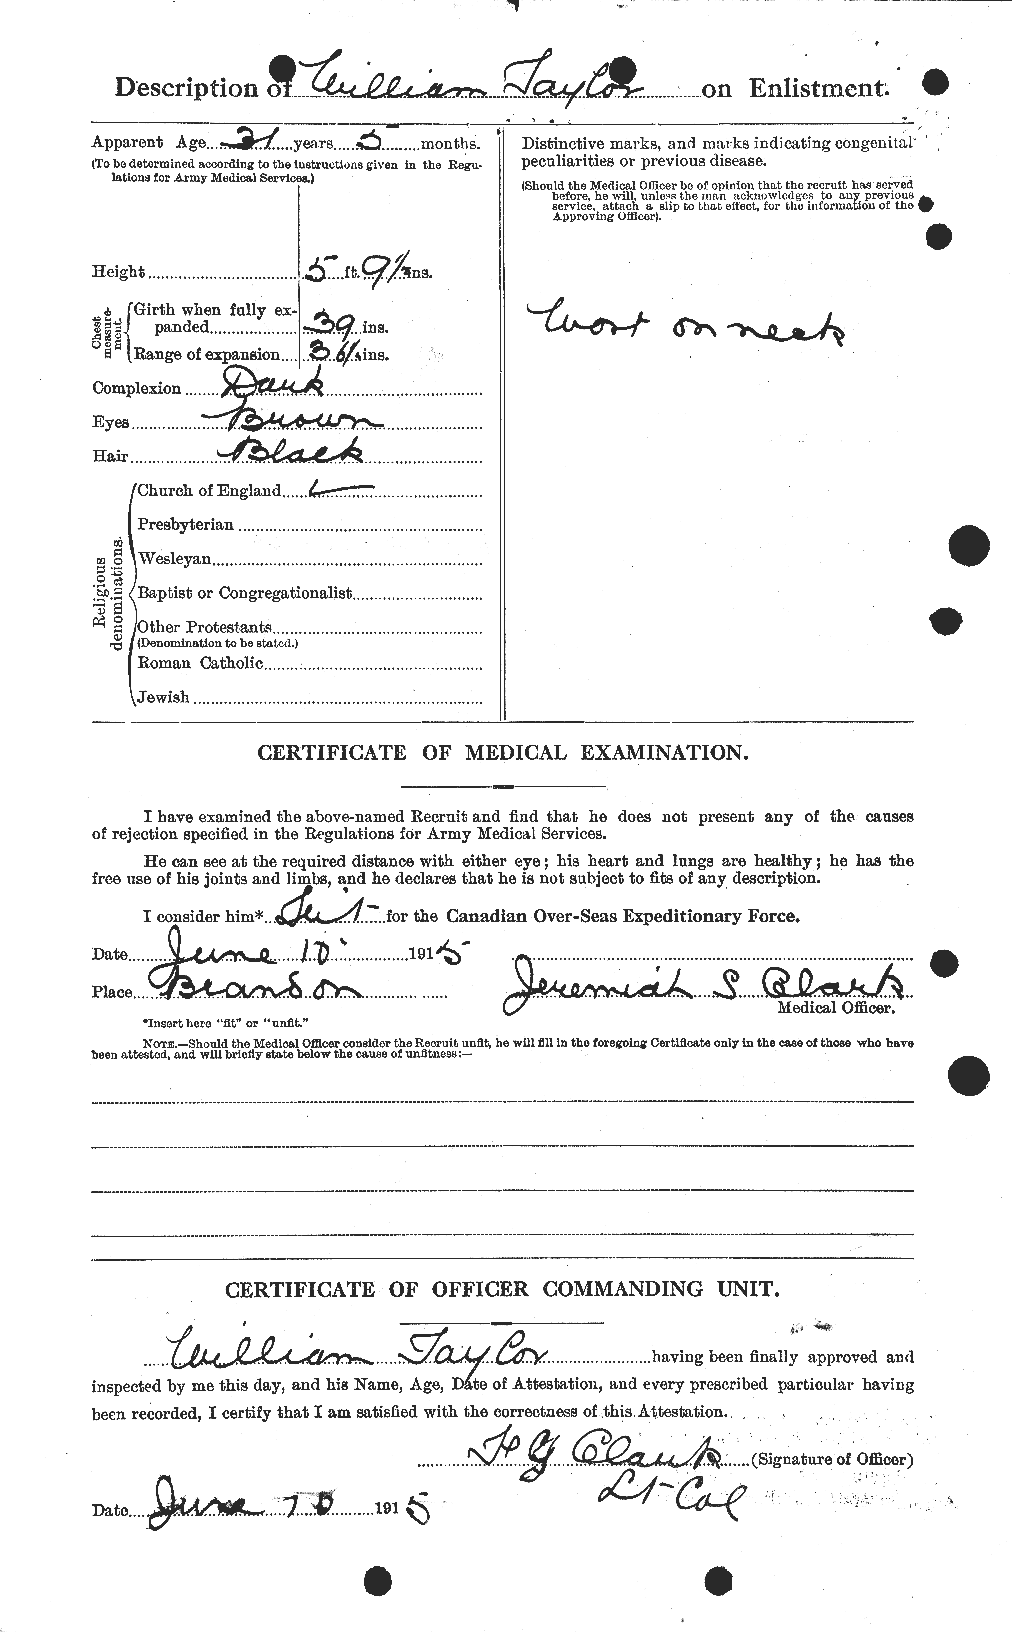 Dossiers du Personnel de la Première Guerre mondiale - CEC 628101b